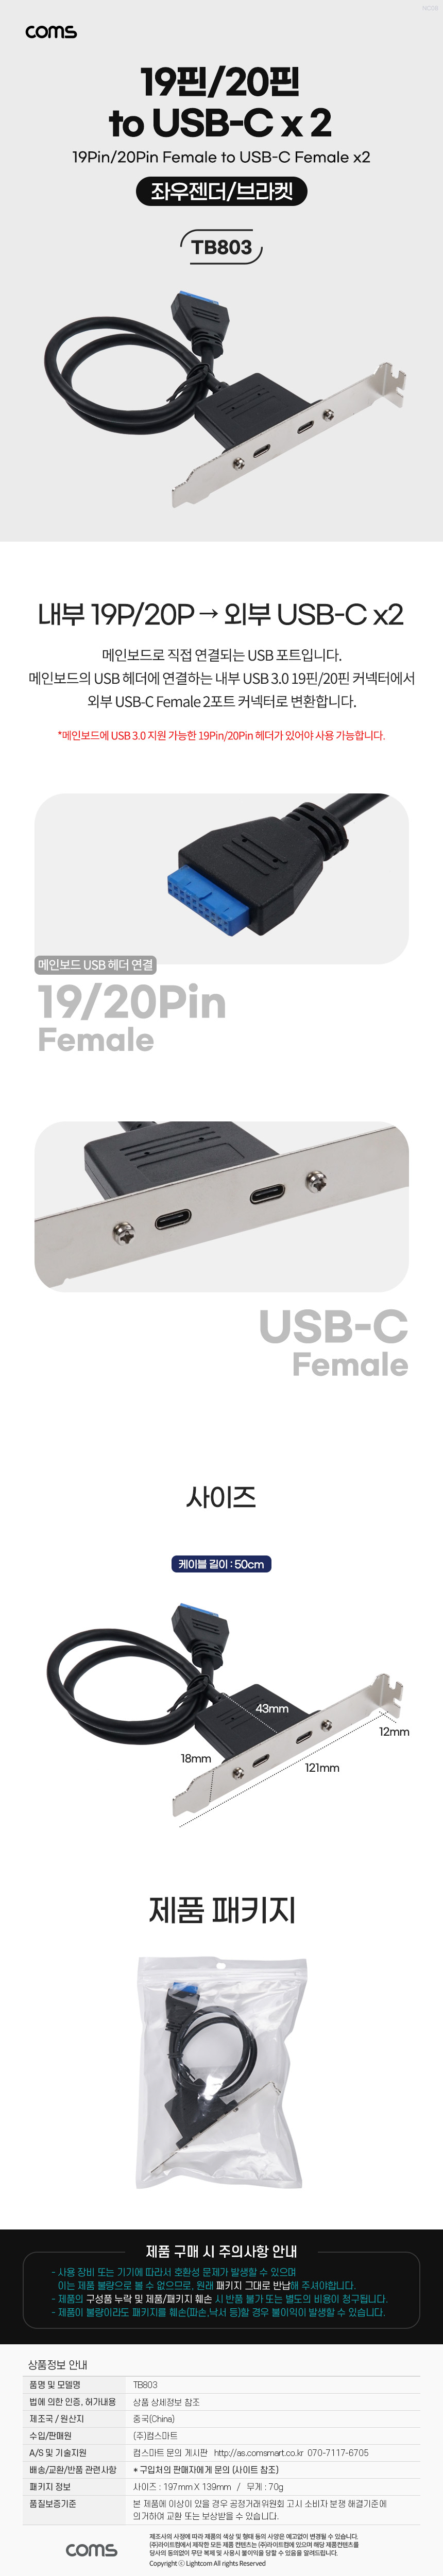 USB 포트 19Pin/20Pin to USB C타입 2Port 2포트 듀얼젠더 메인보드 마더보드 19핀/20핀 type C